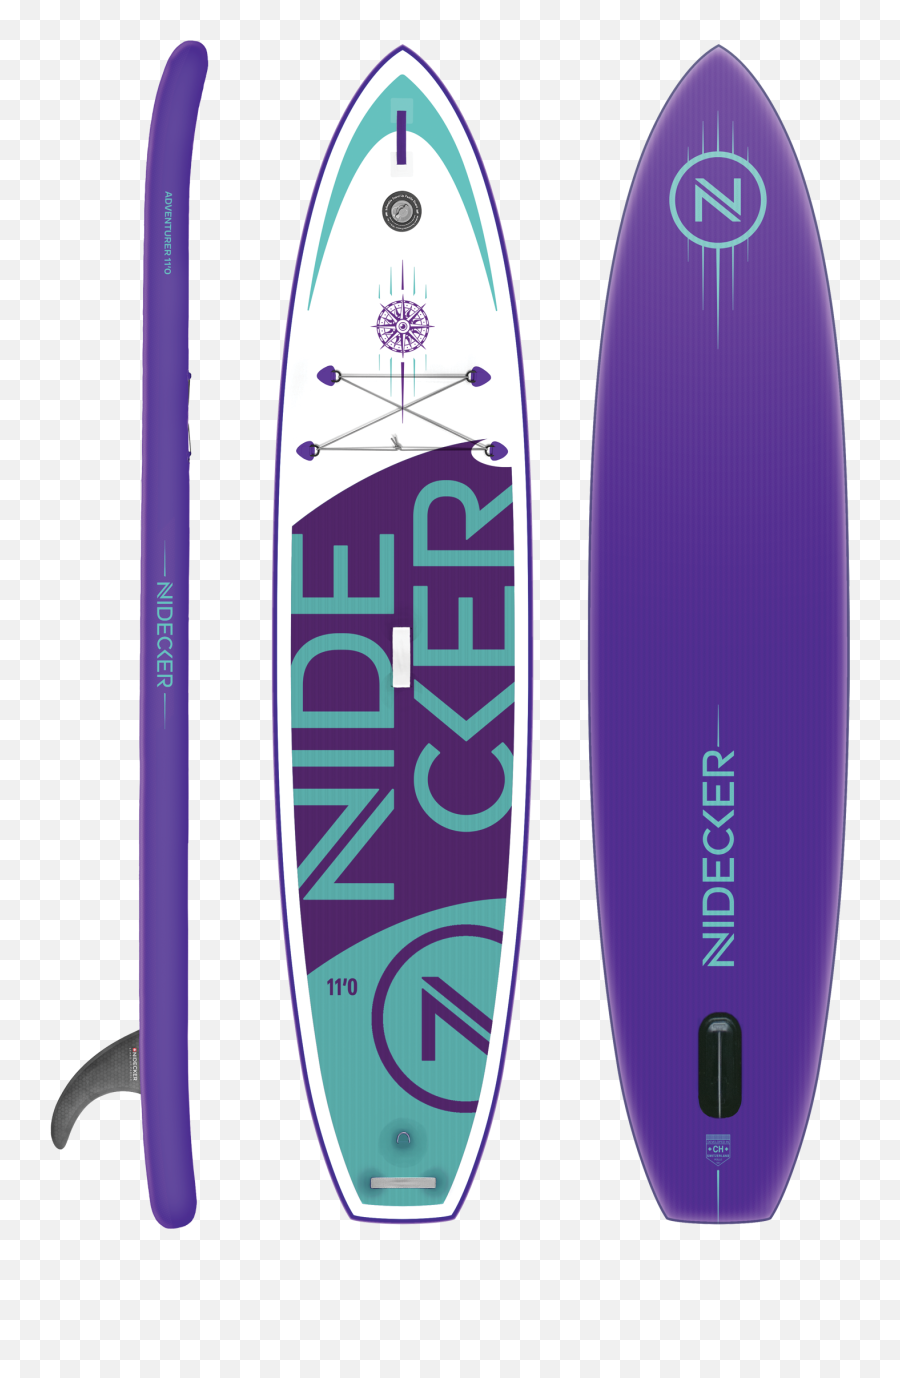 Download Adventurer 110 - Surfboard Png,Surfboard Transparent Background